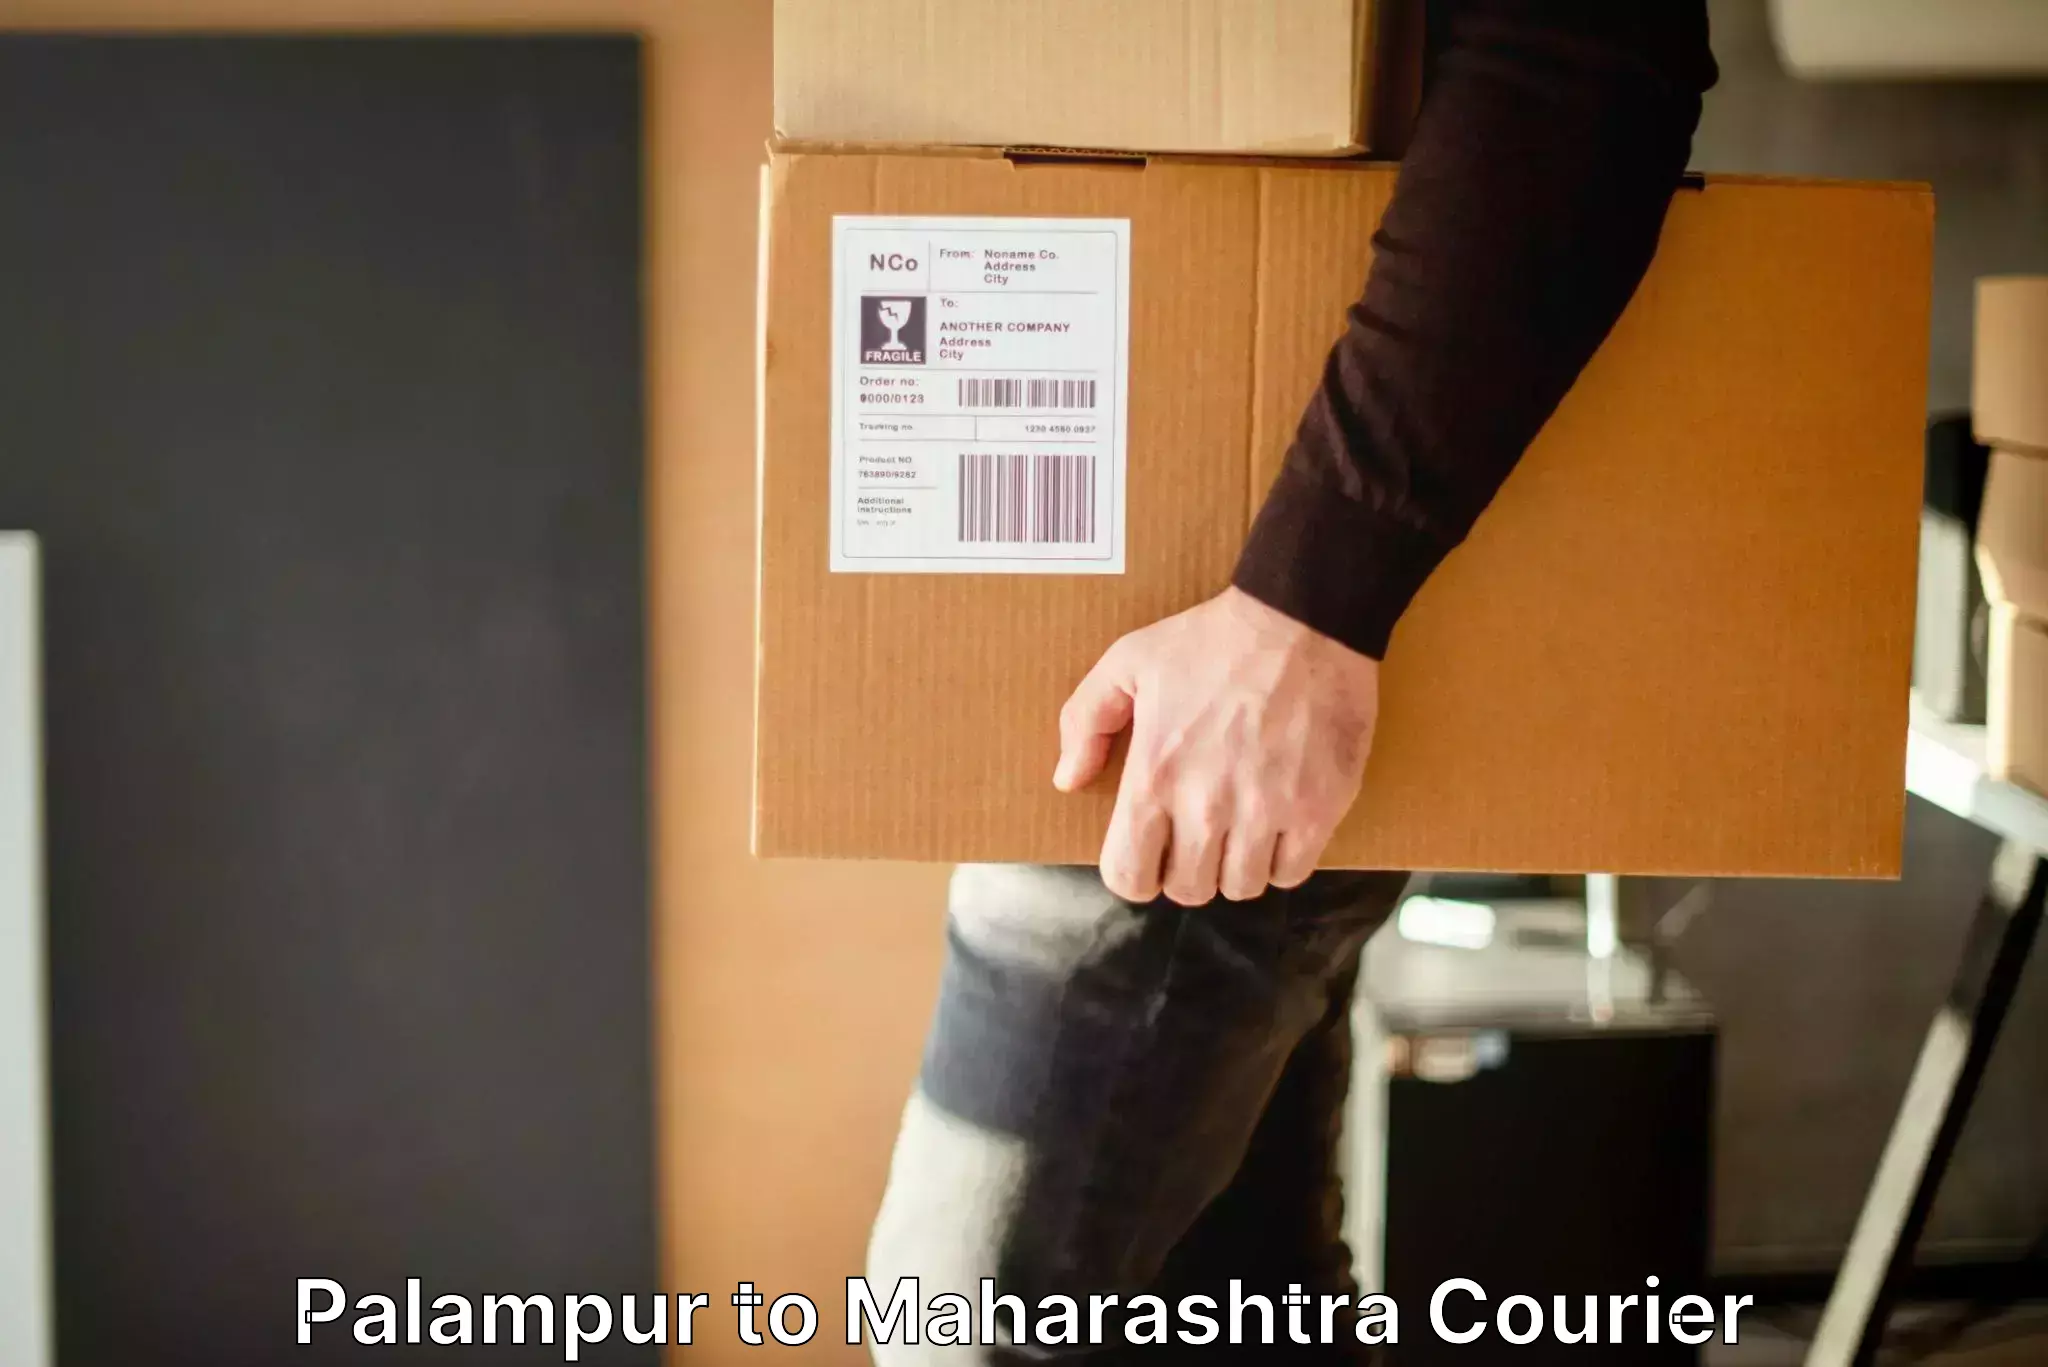 Baggage shipping service Palampur to Ganpatipule